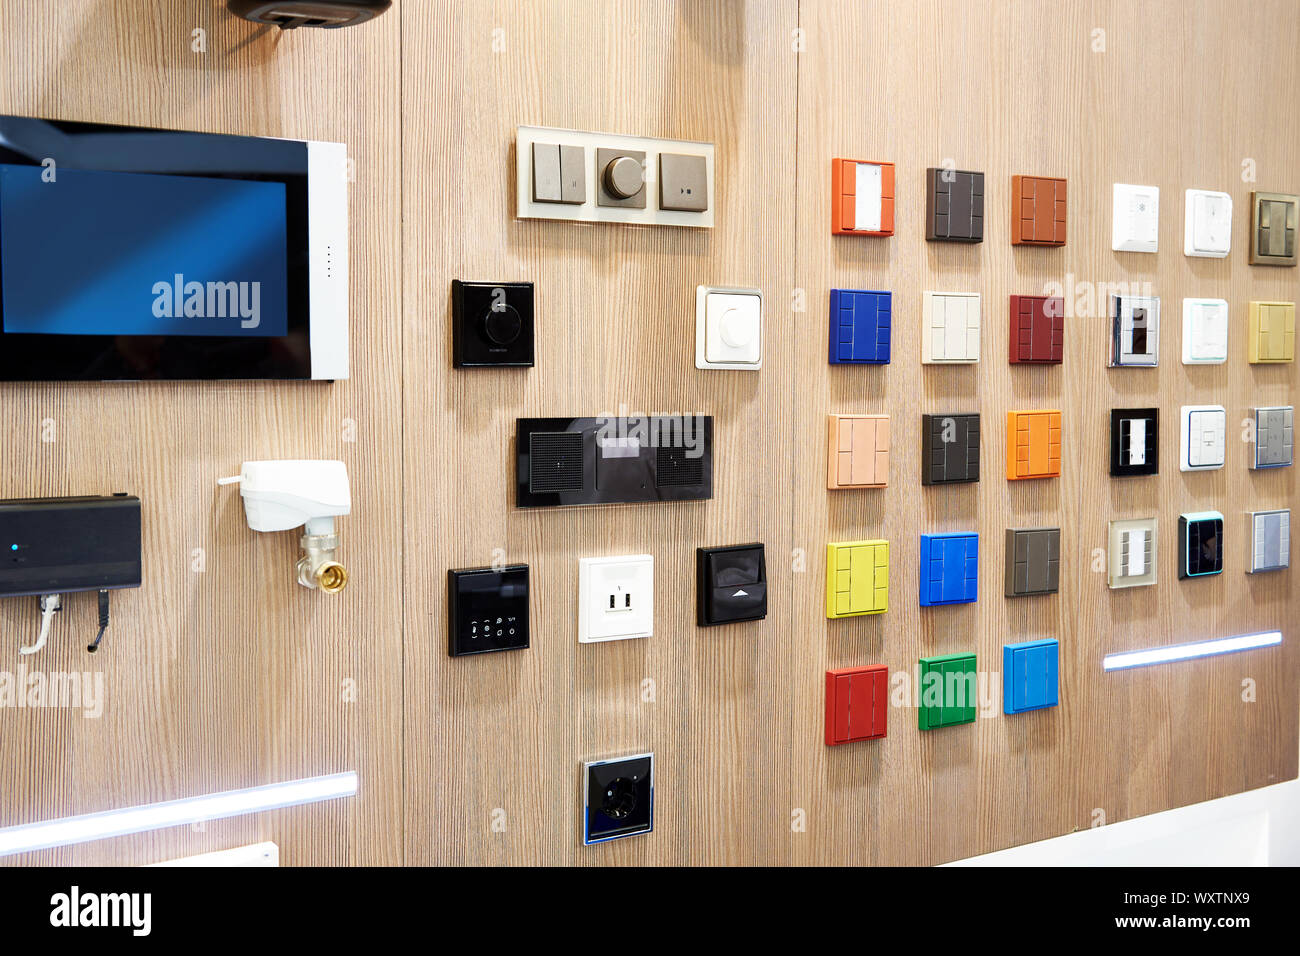 Interruttori delle luci per smart home in negozio Foto Stock